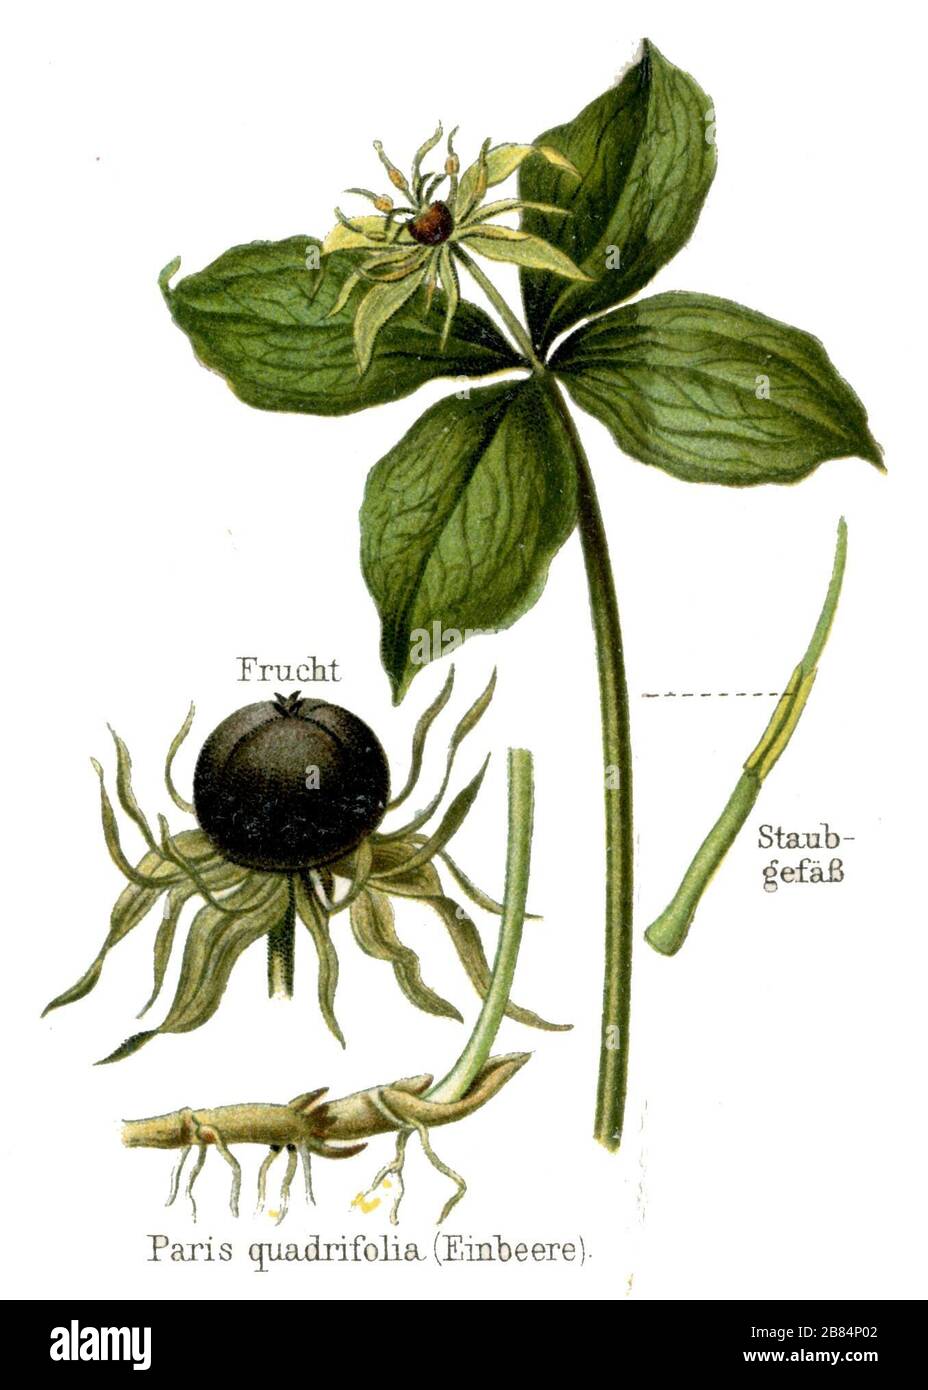 Paris quadrifolia, herb-paris or true lover's knot Paris quadrifolia,  (encyclopedia, ca. 1910) Stock Photo